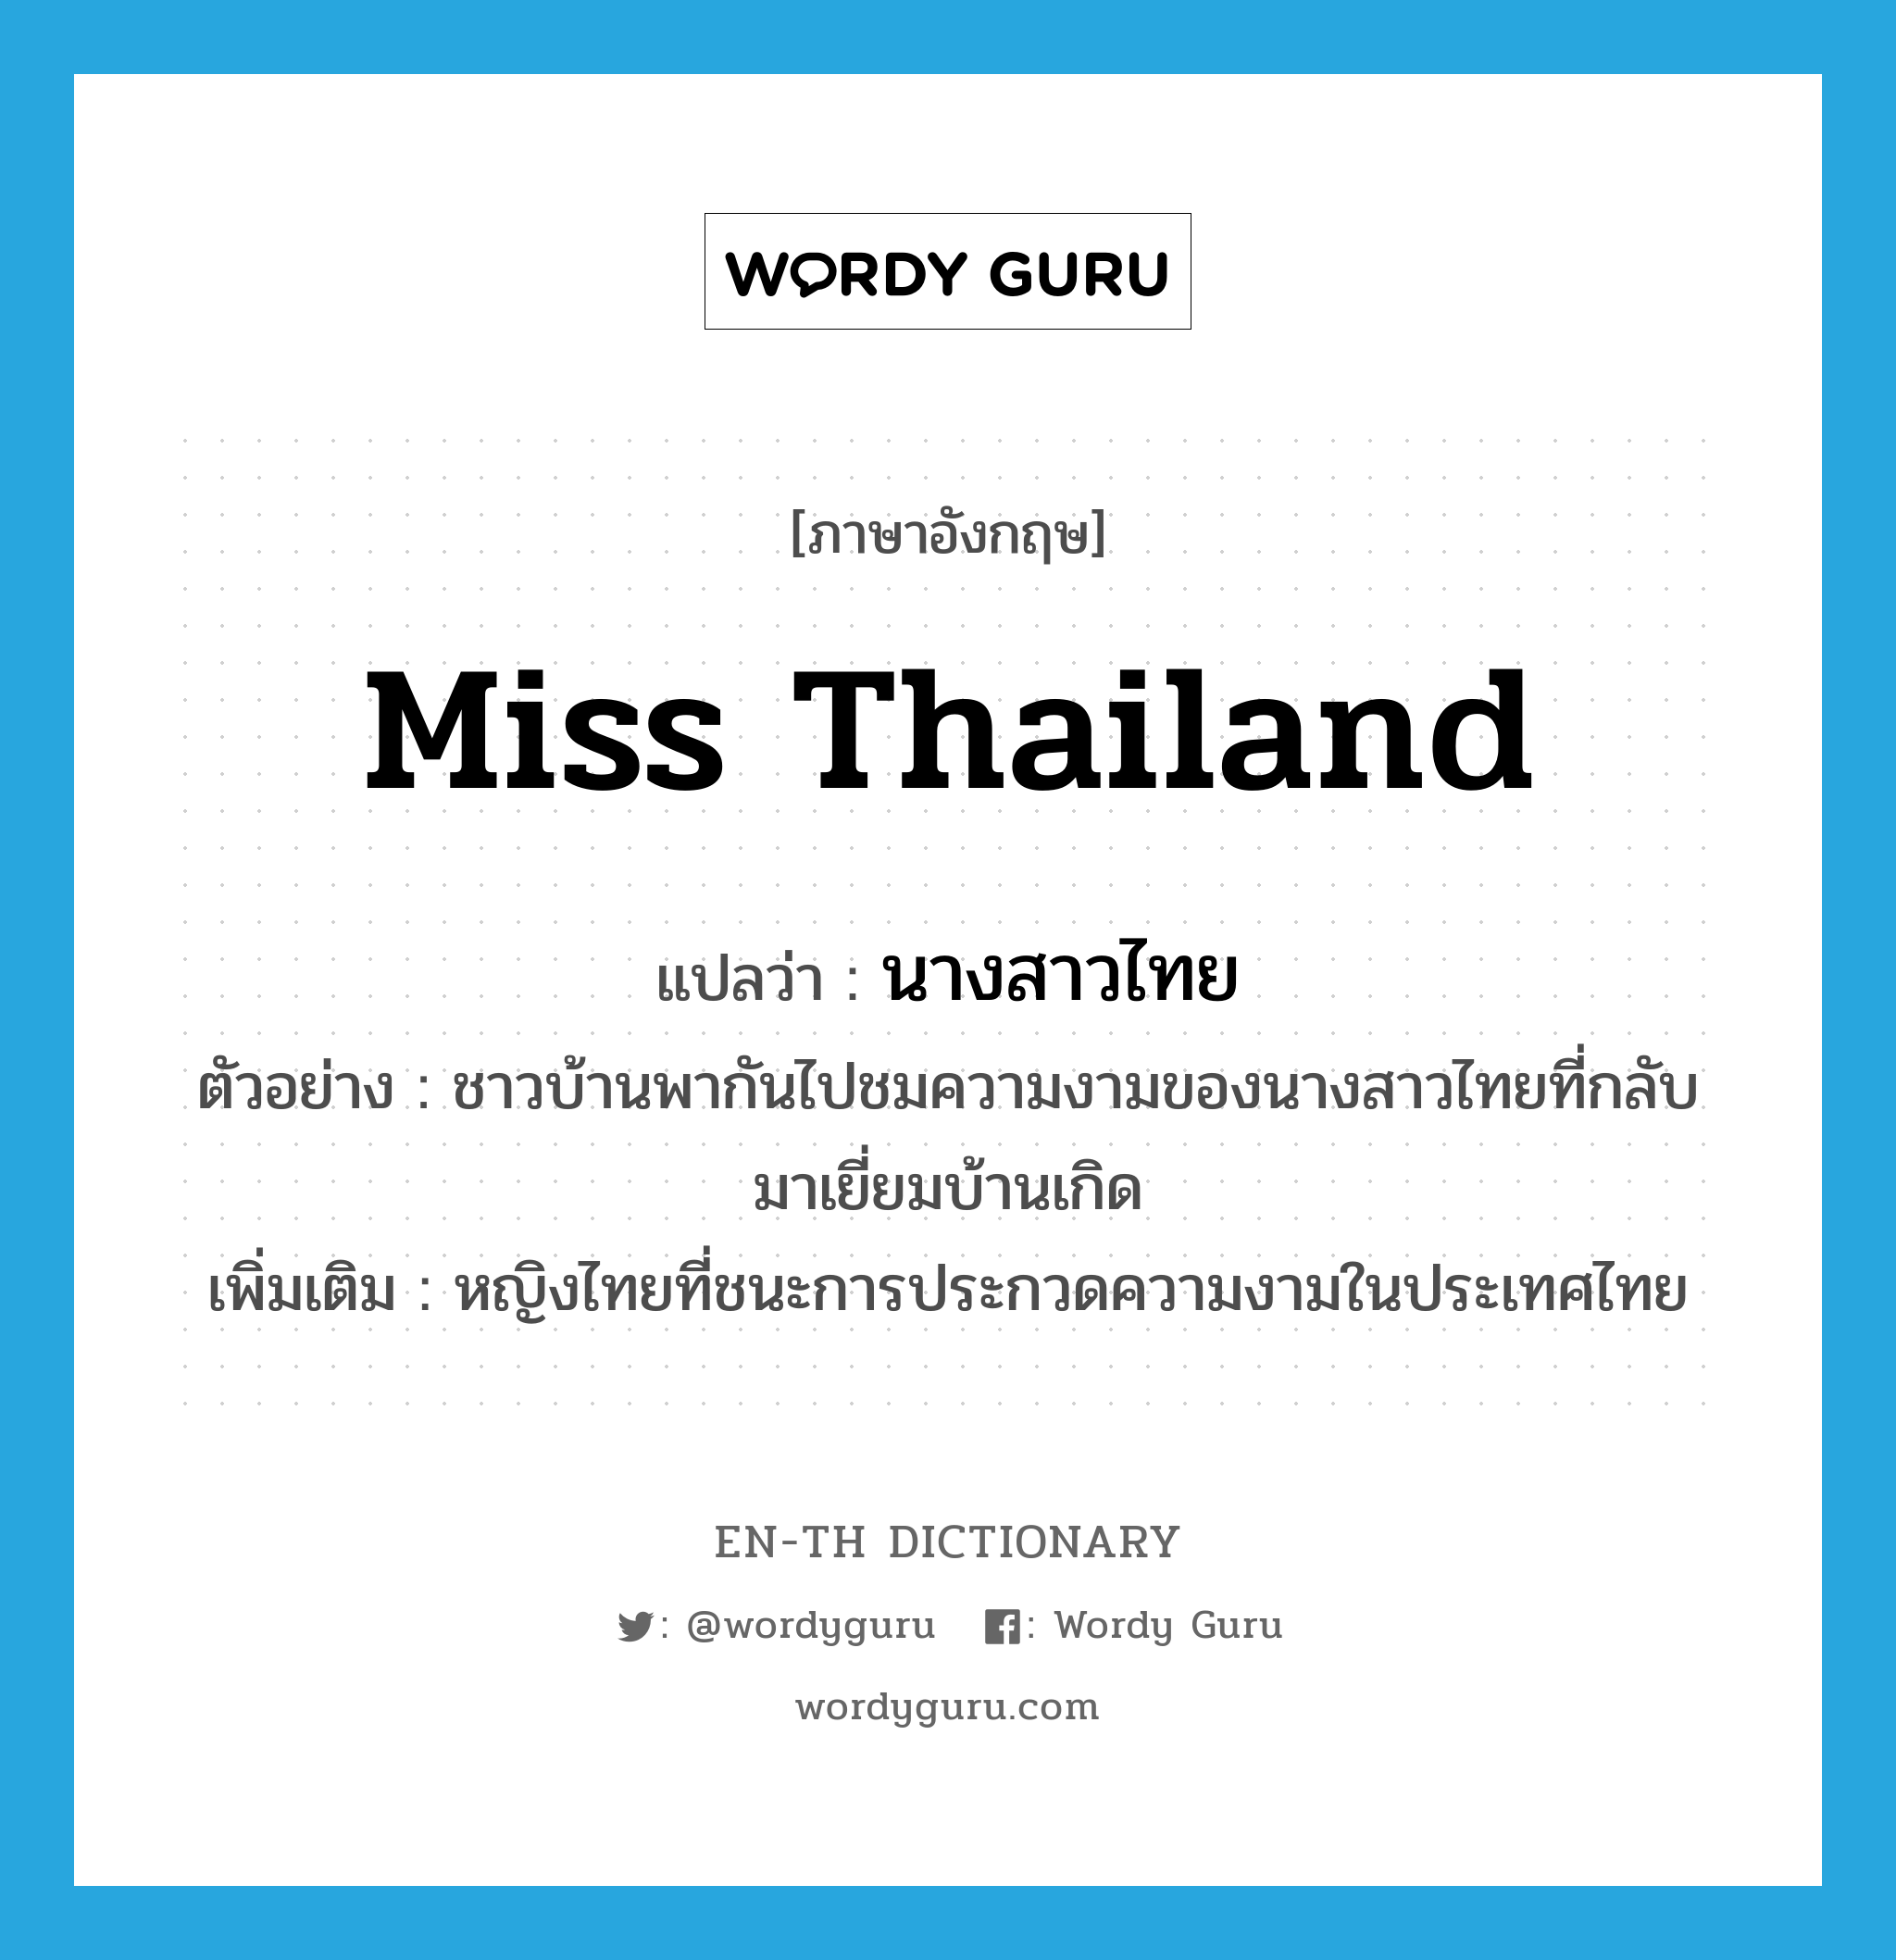 Miss Thailand แปลว่า?, คำศัพท์ภาษาอังกฤษ Miss Thailand แปลว่า นางสาวไทย ประเภท N ตัวอย่าง ชาวบ้านพากันไปชมความงามของนางสาวไทยที่กลับมาเยี่ยมบ้านเกิด เพิ่มเติม หญิงไทยที่ชนะการประกวดความงามในประเทศไทย หมวด N